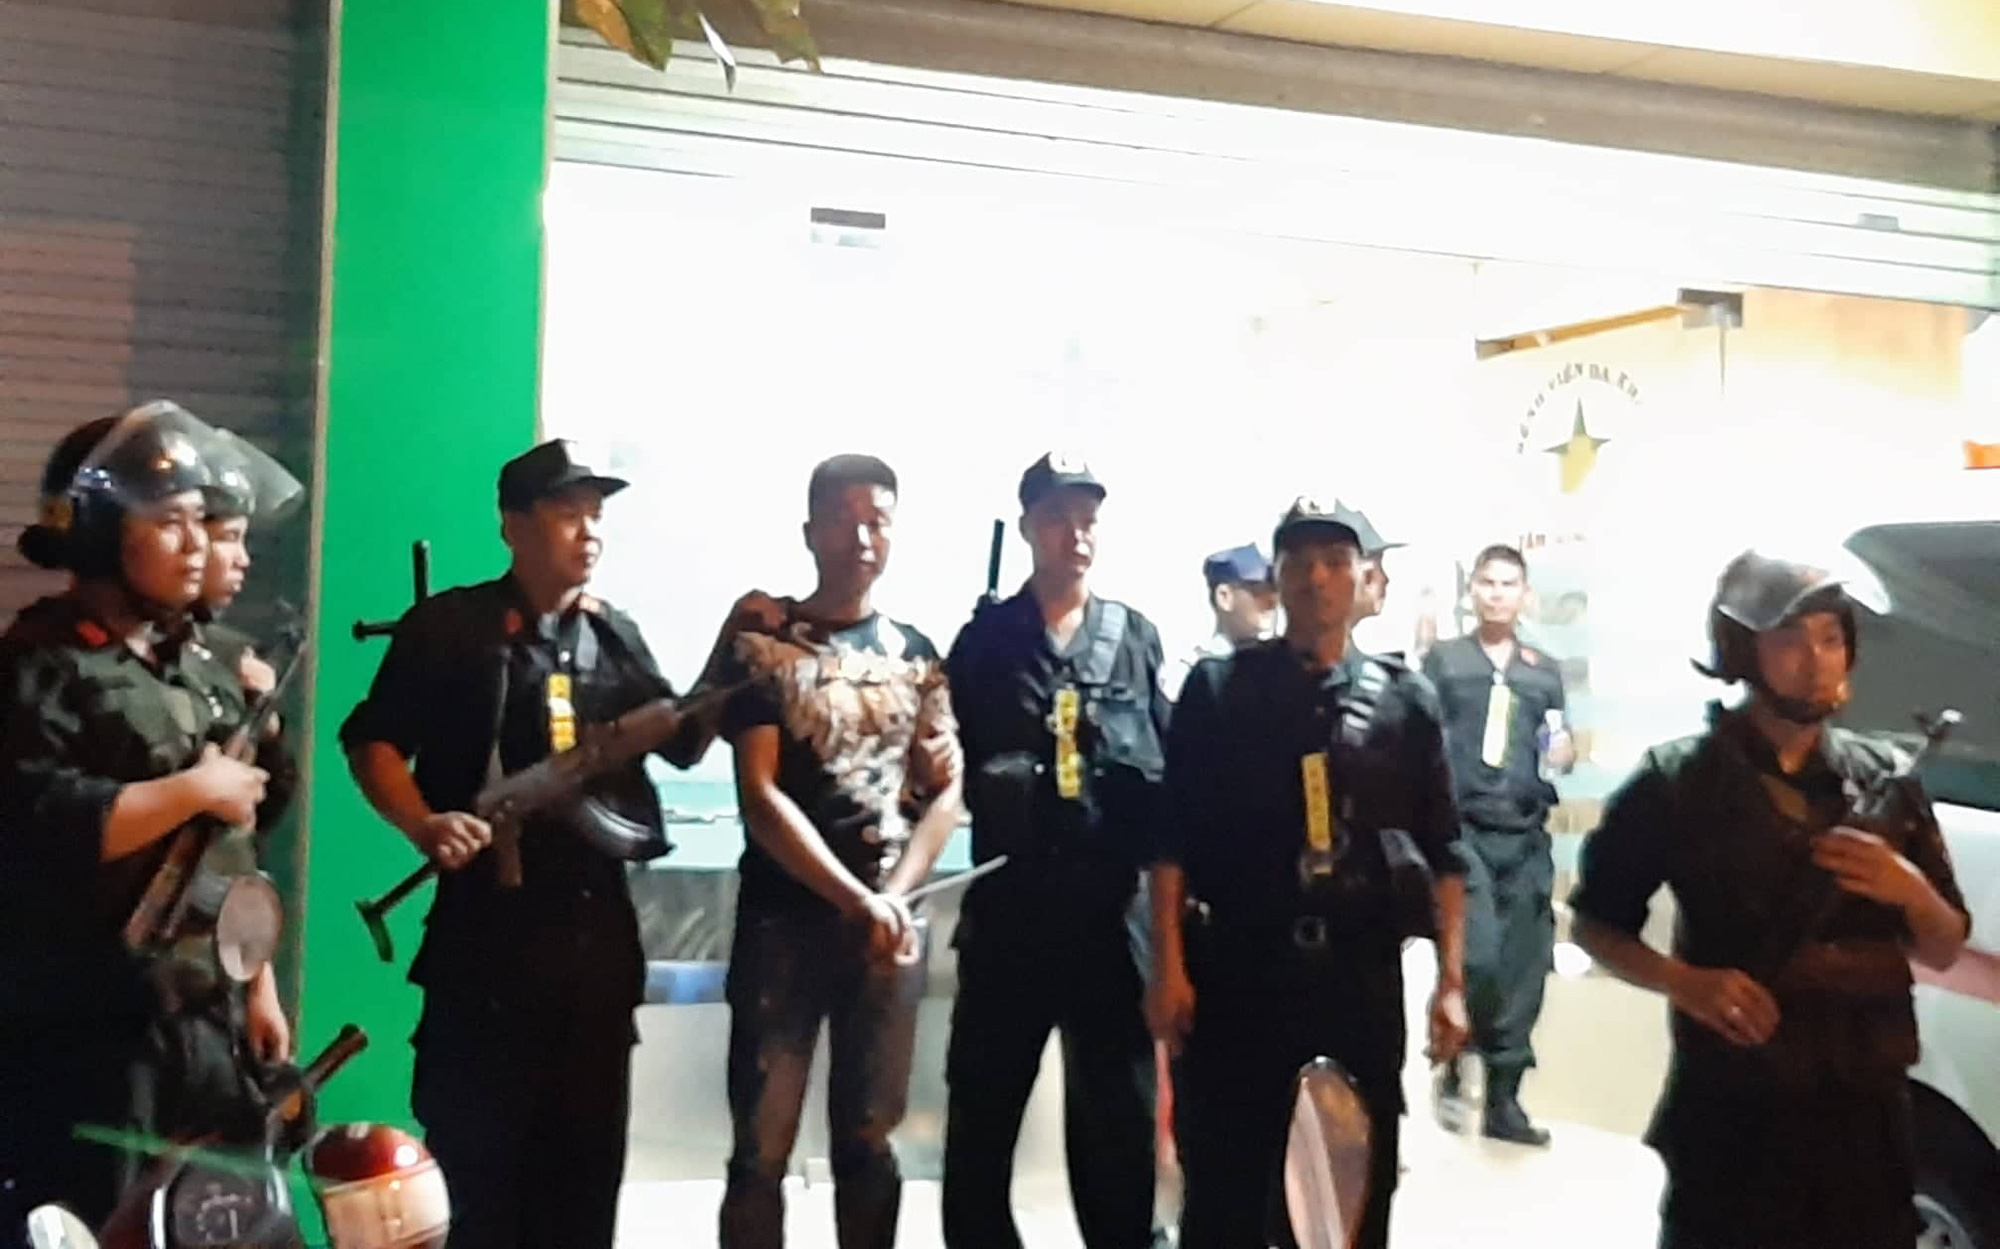 Nhóm giang hồ khống chế giám đốc bệnh viện Tâm Hồng Phước để đòi nợ, hàng trăm Cảnh sát bao vây truy bắt